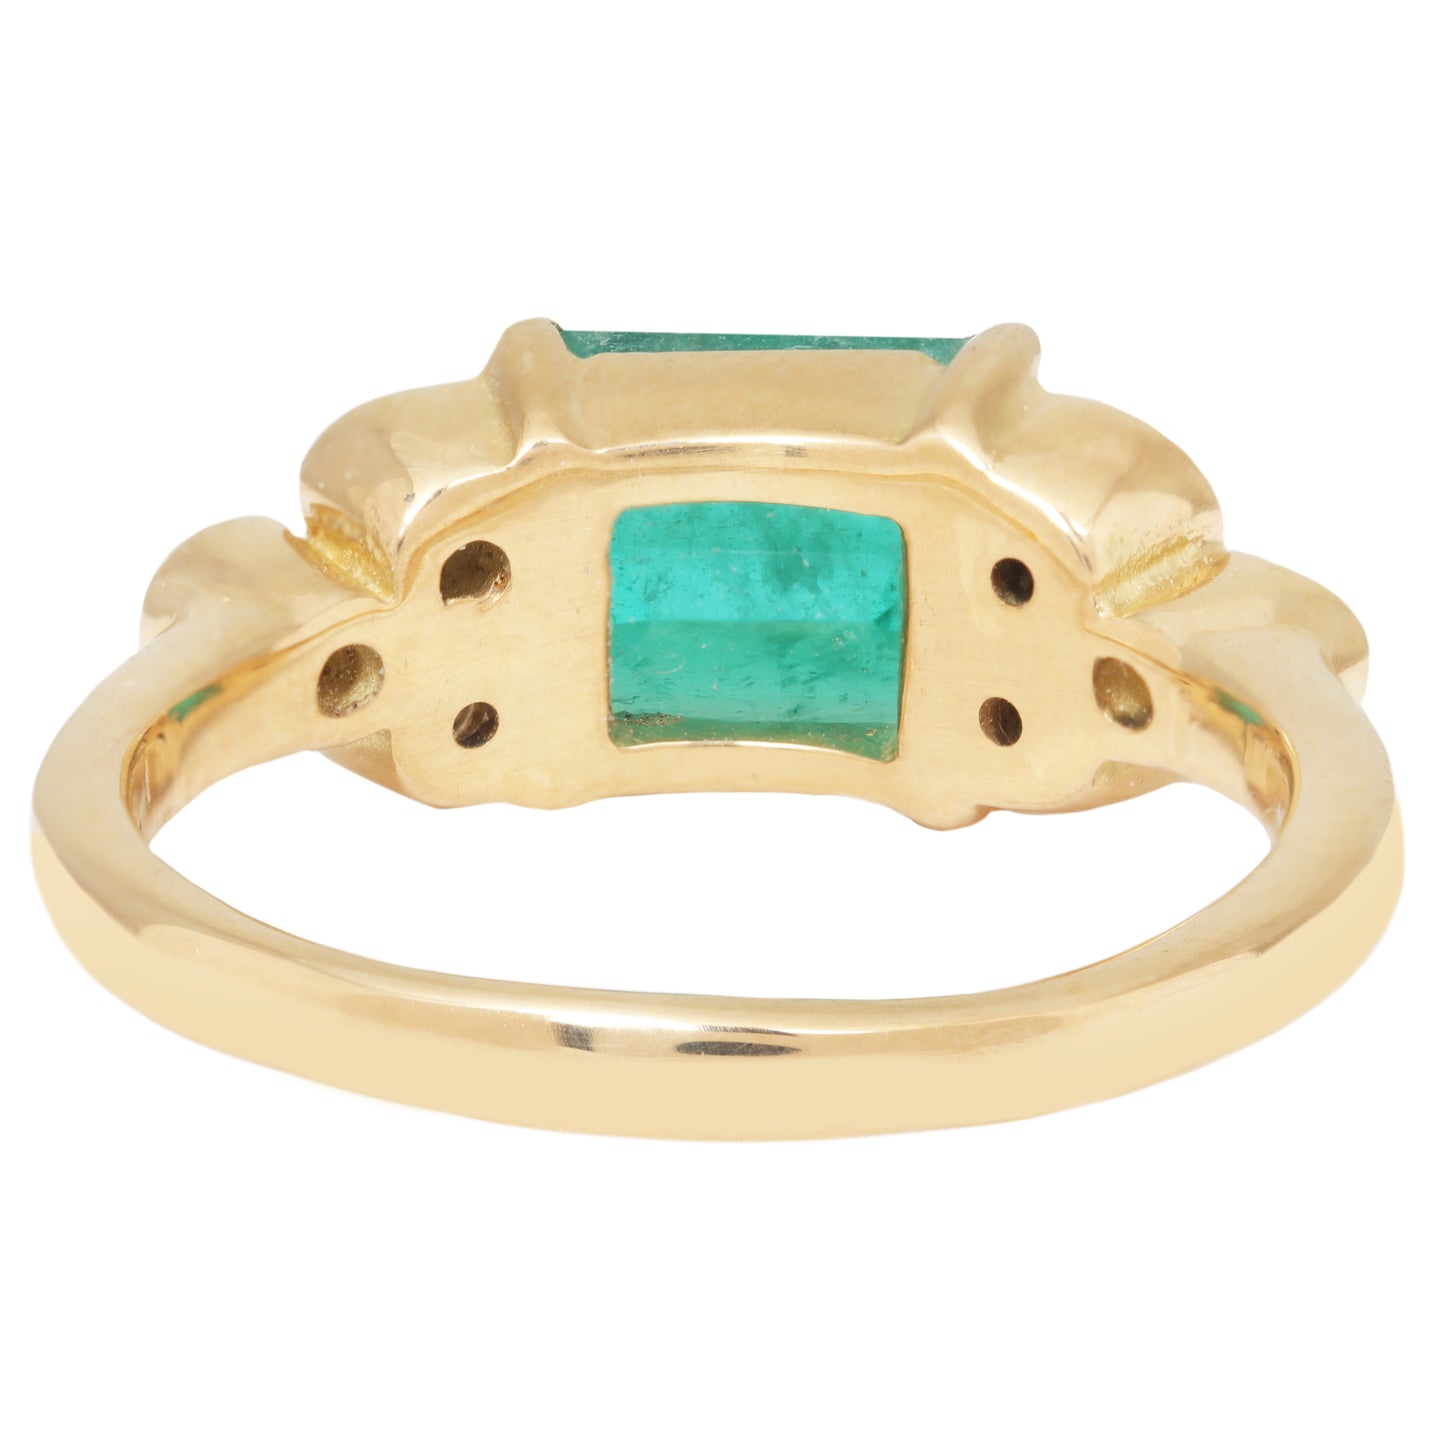 Nova Green Emerald Ring